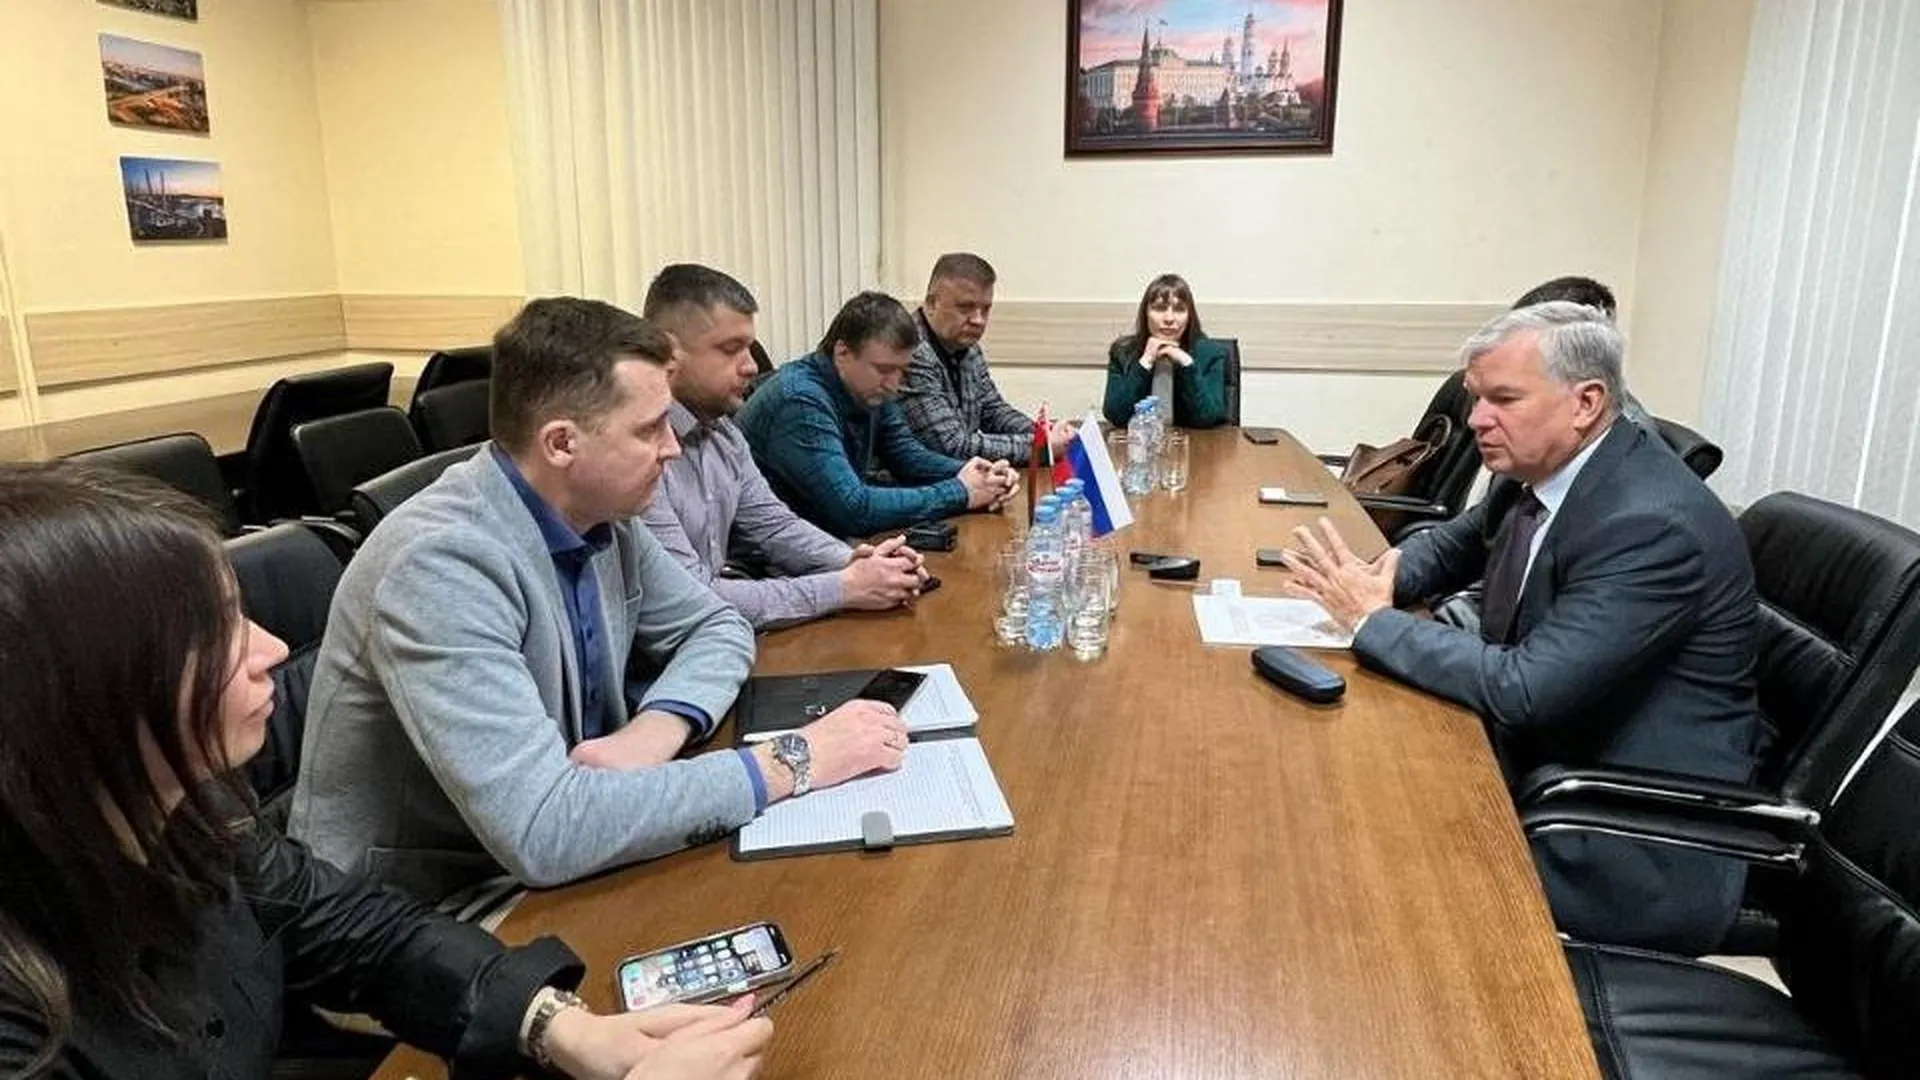 6 компаний из Подмосковья участвуют в бизнес-миссии в Республике Беларусь